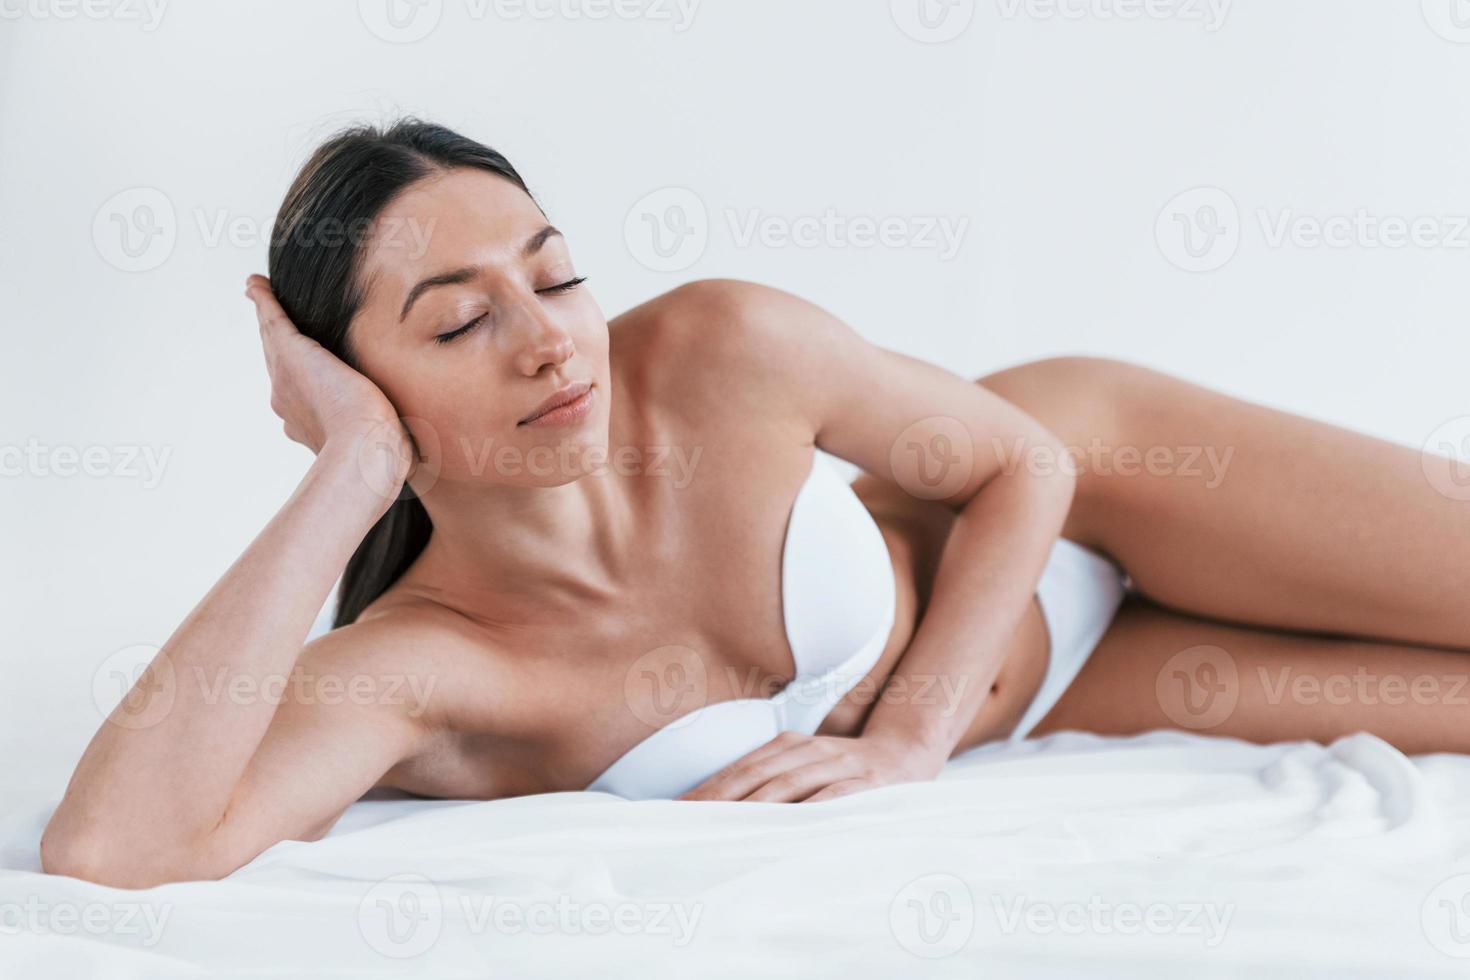 jovem de cueca e com corpo bonito deitado no estúdio contra um fundo branco foto